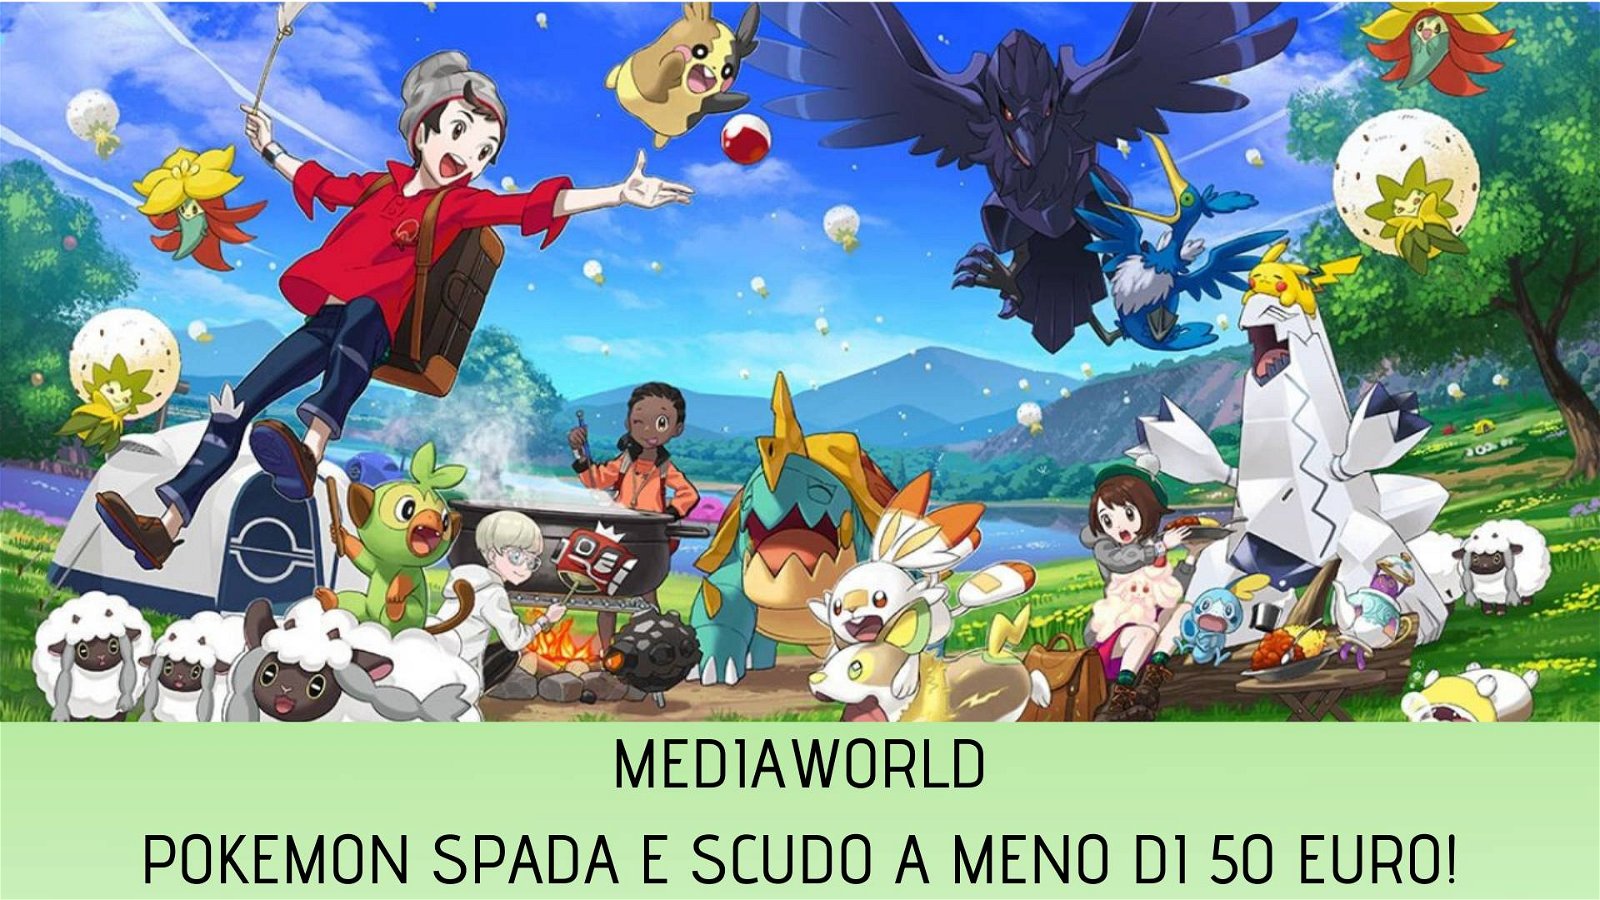 Immagine di Pokémon Spada e Scudo in offerta su Mediaworld!